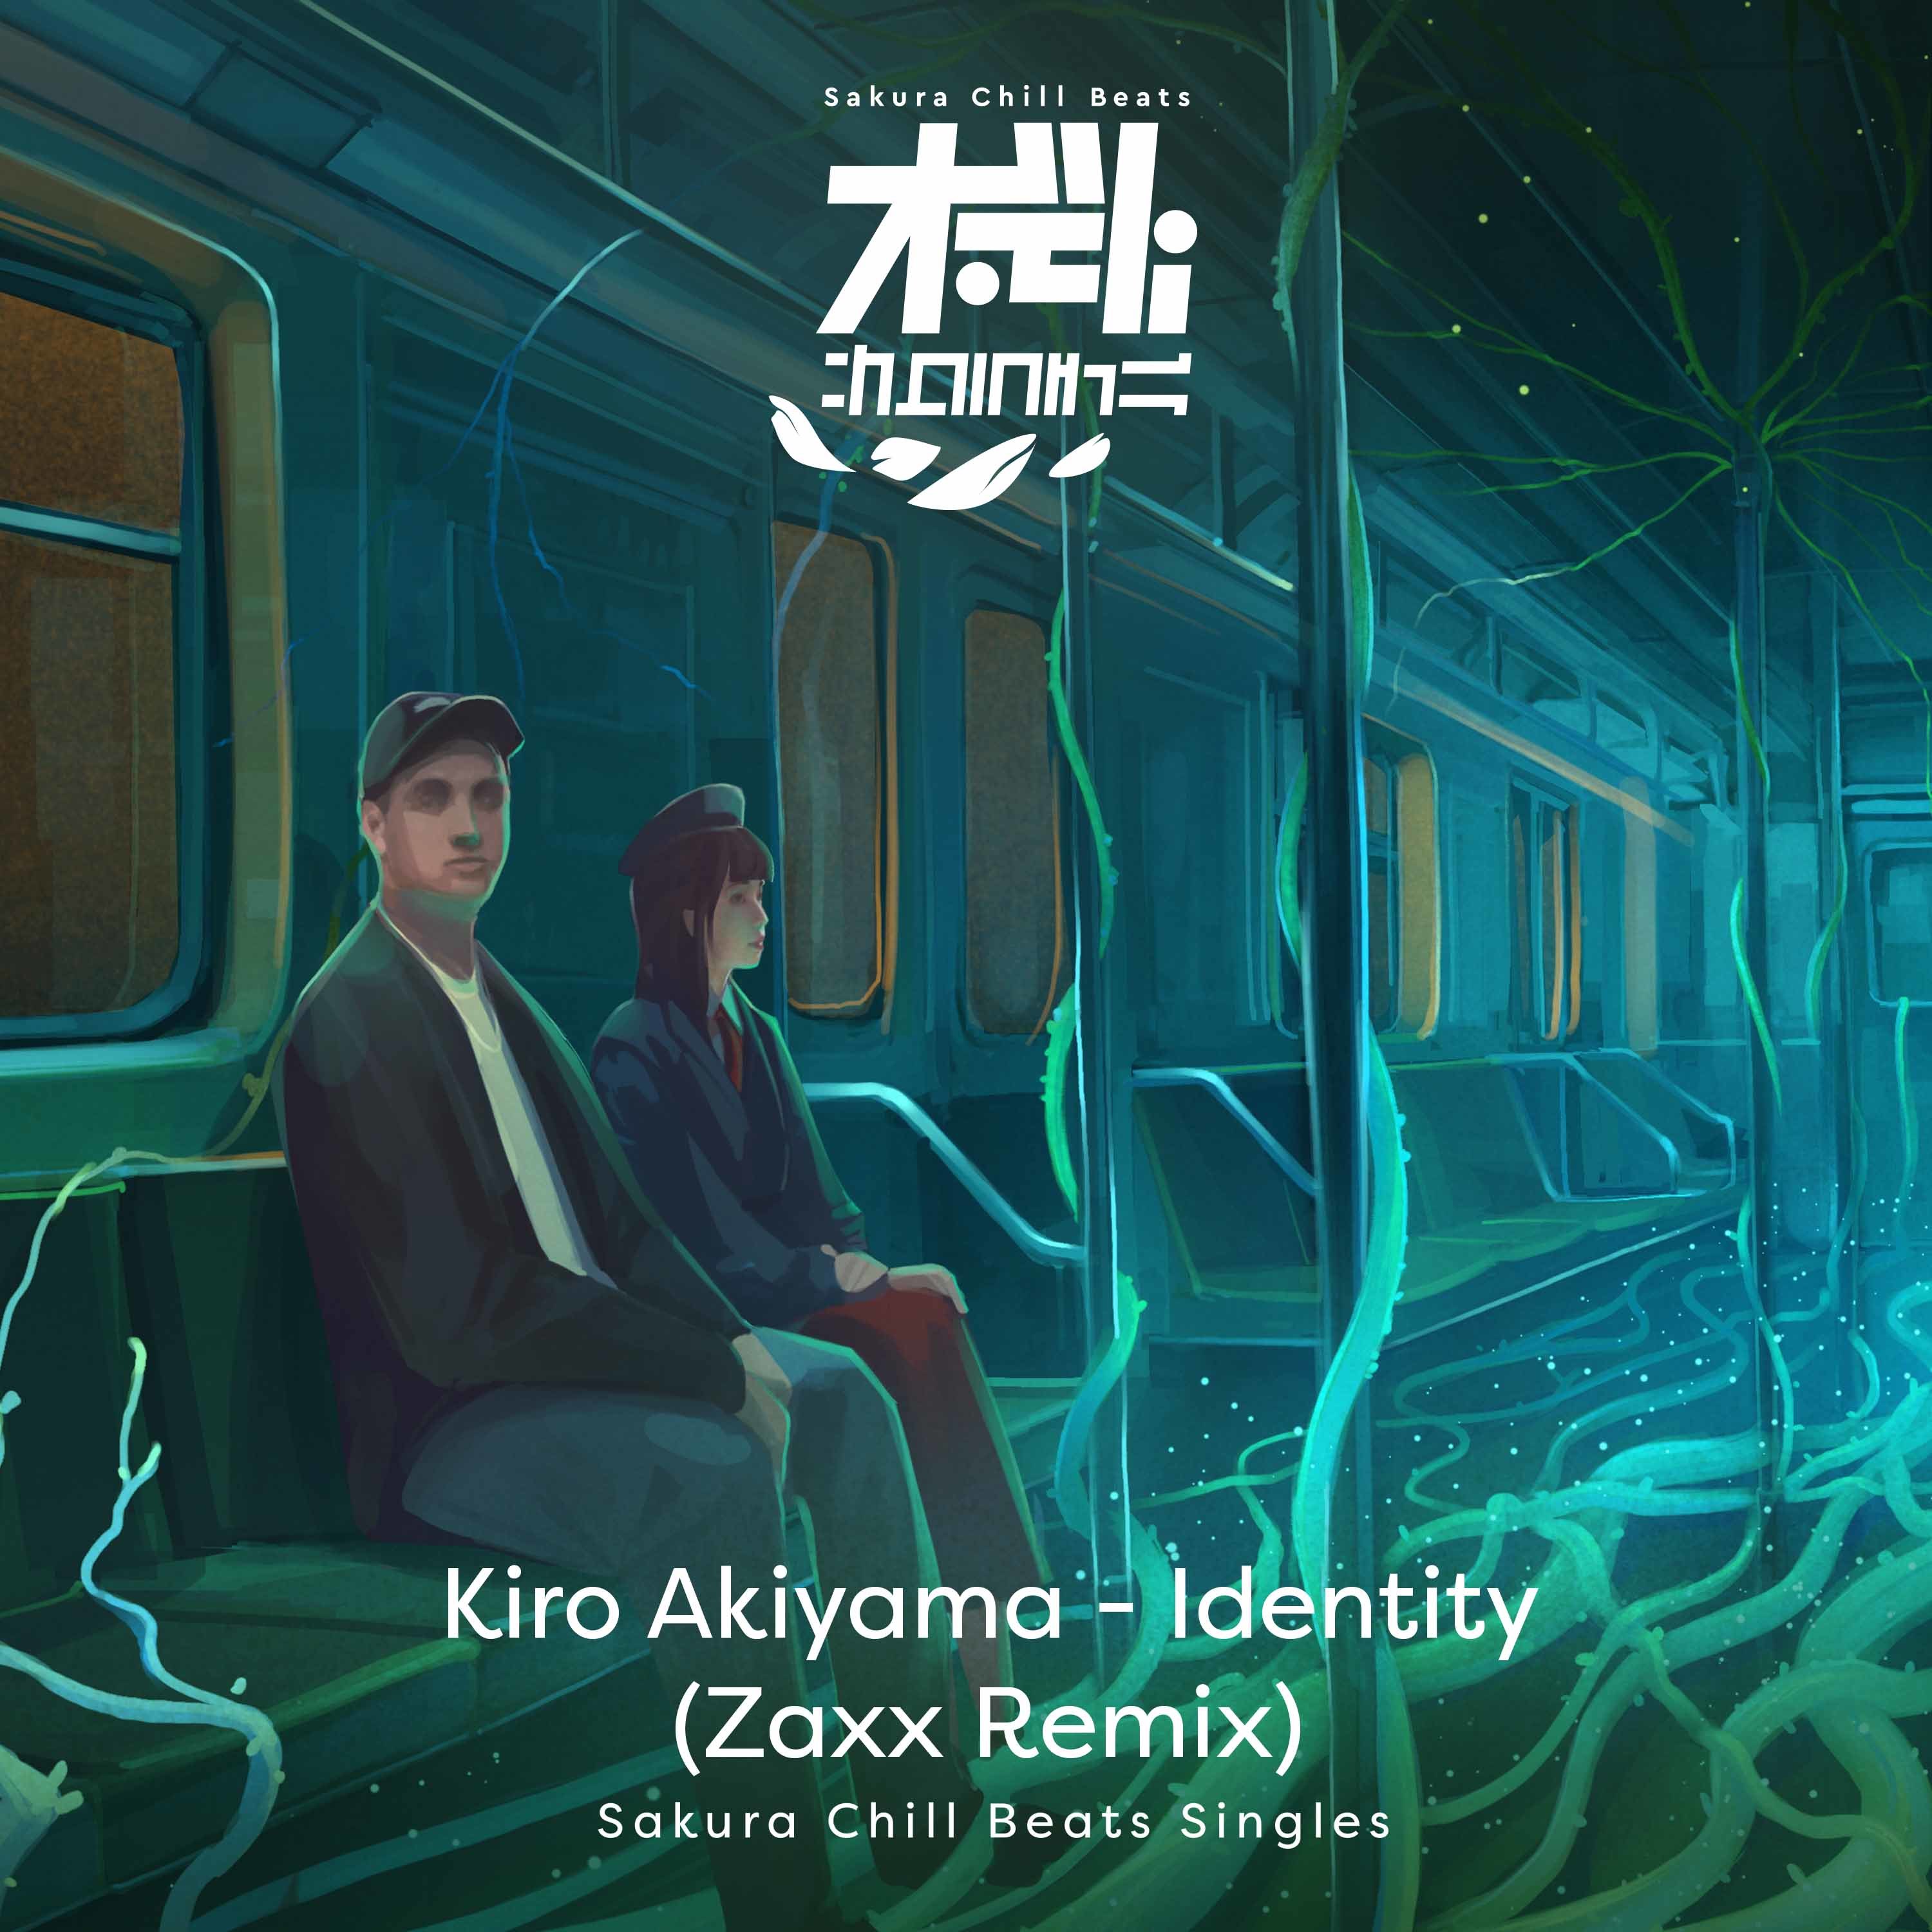 アイデンティティ (Zaxx Remix) - Sakura Chill Beats Singles配信ジャケット